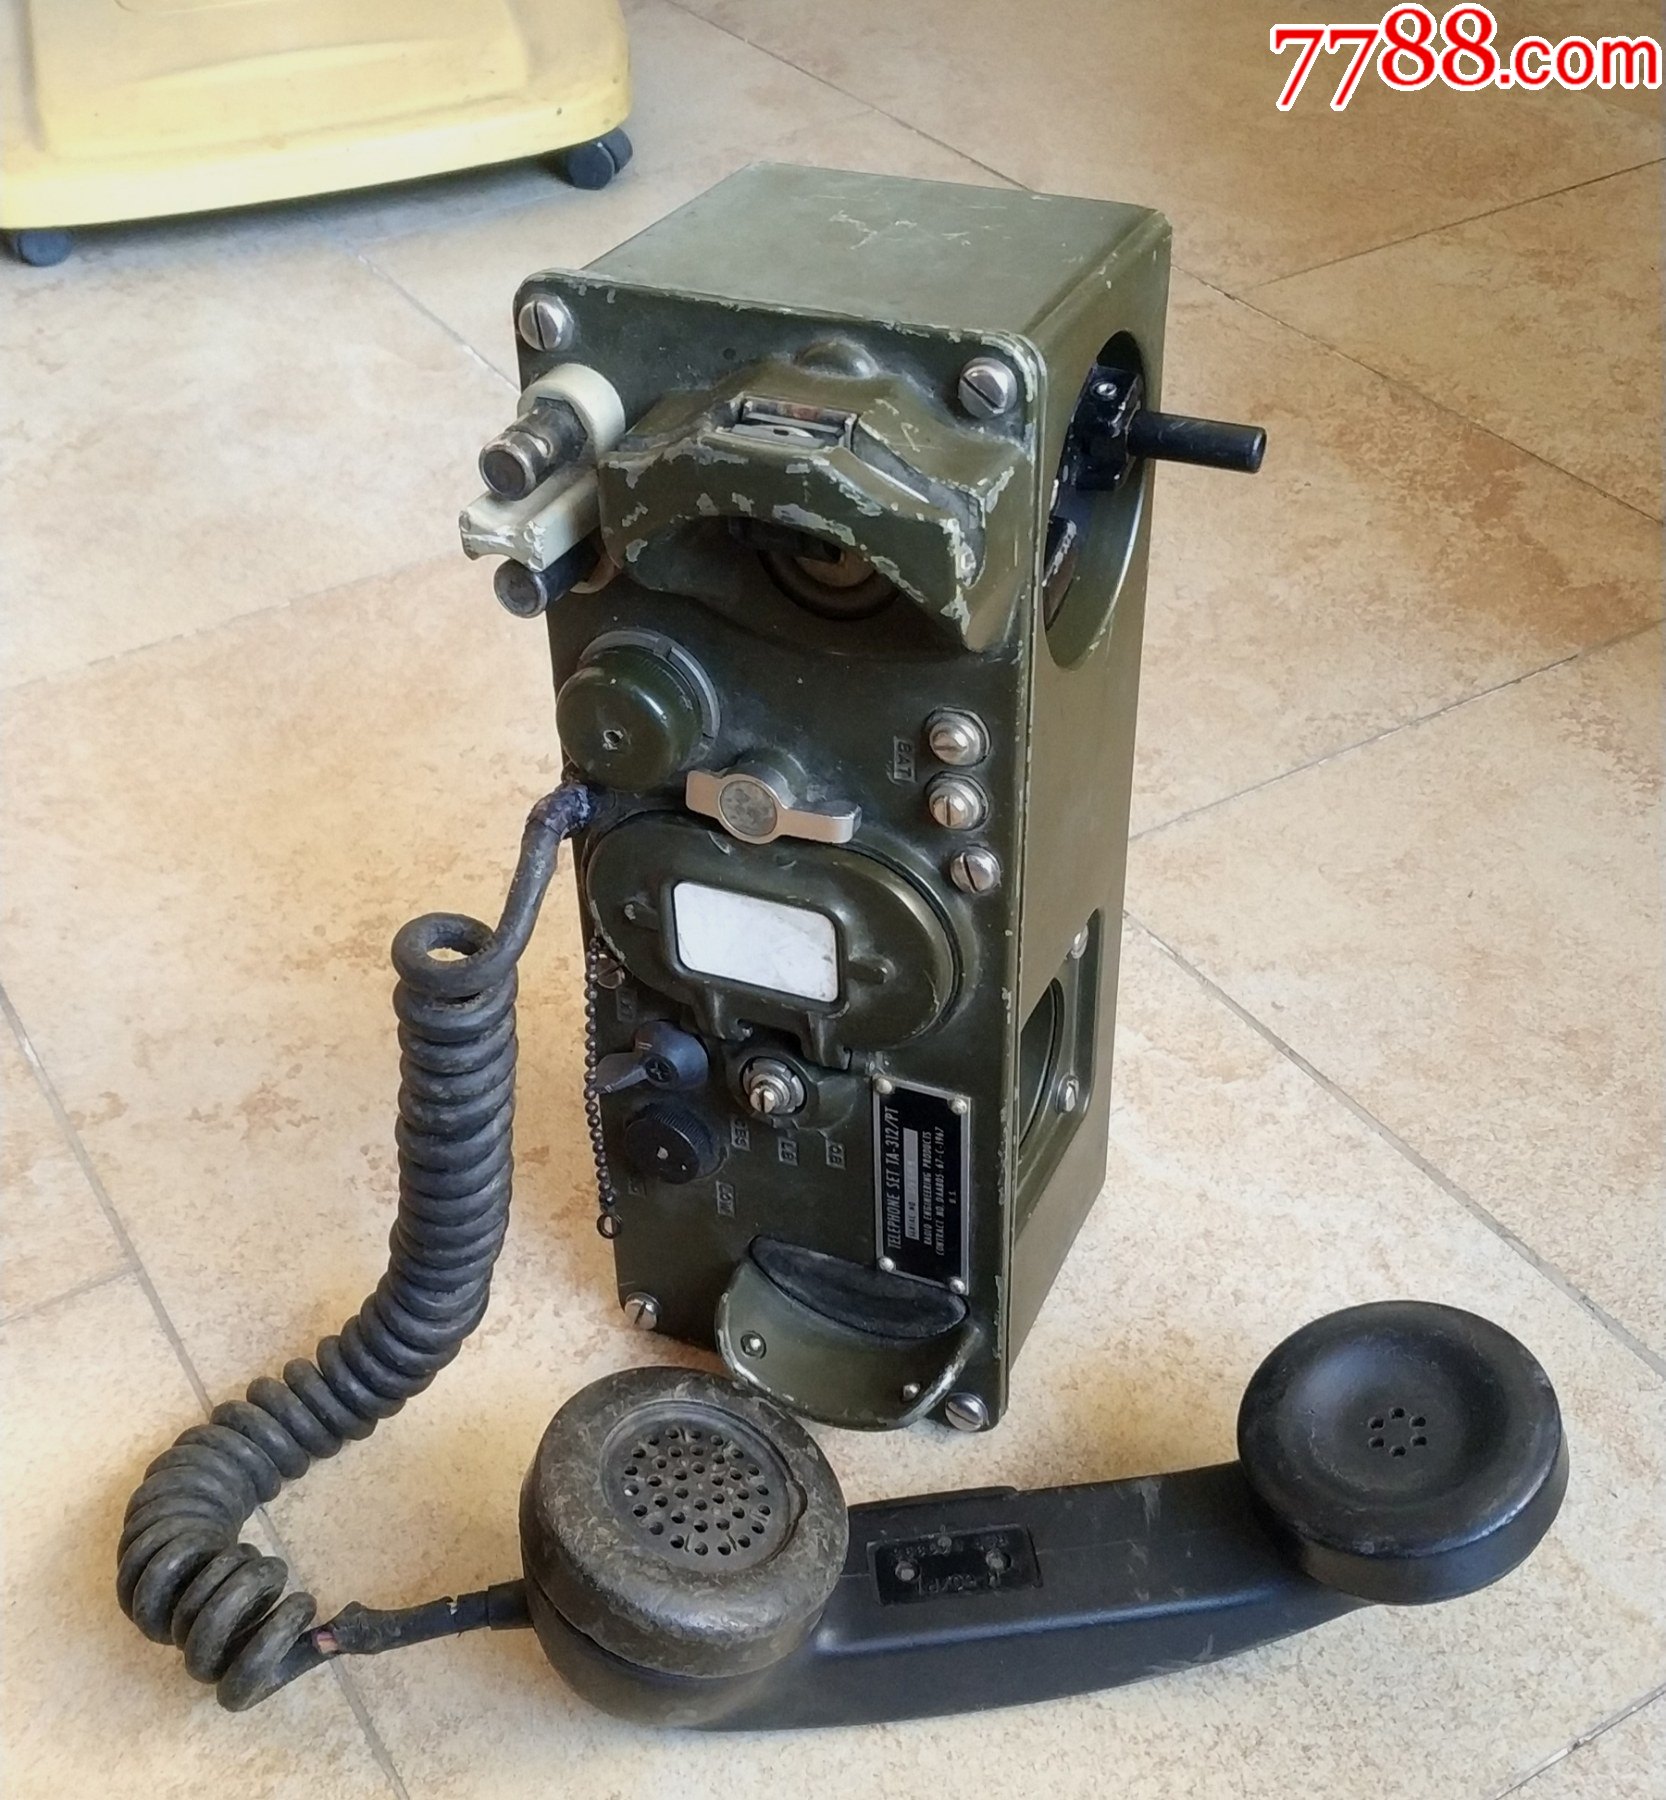 老式电话机军用图片